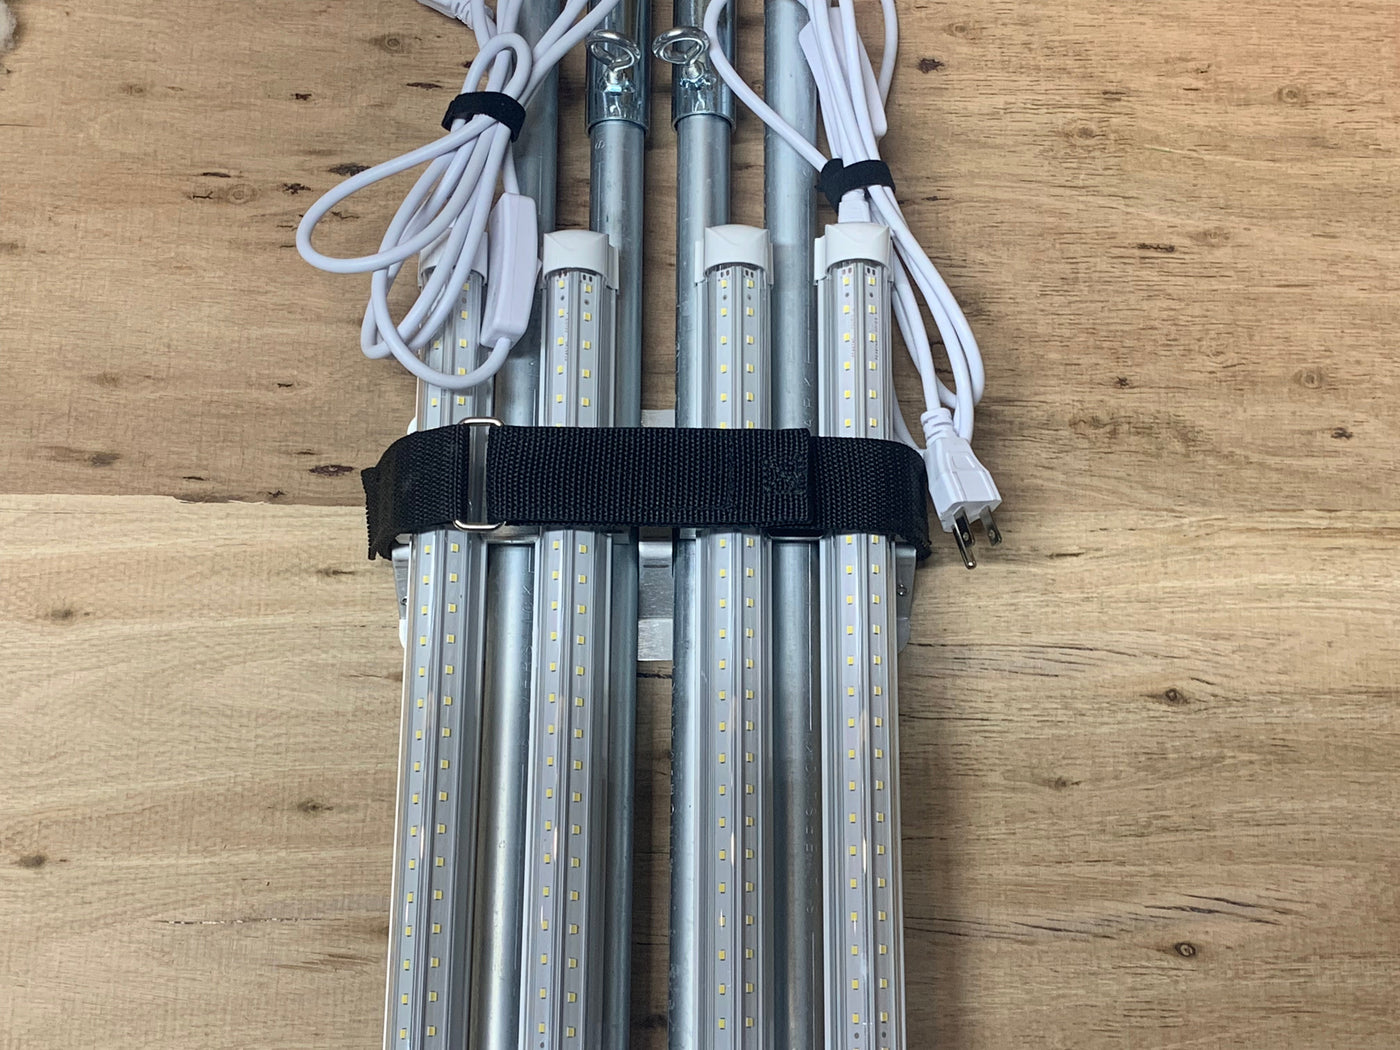 Pit Light Storage Rack - 10 Foot Models